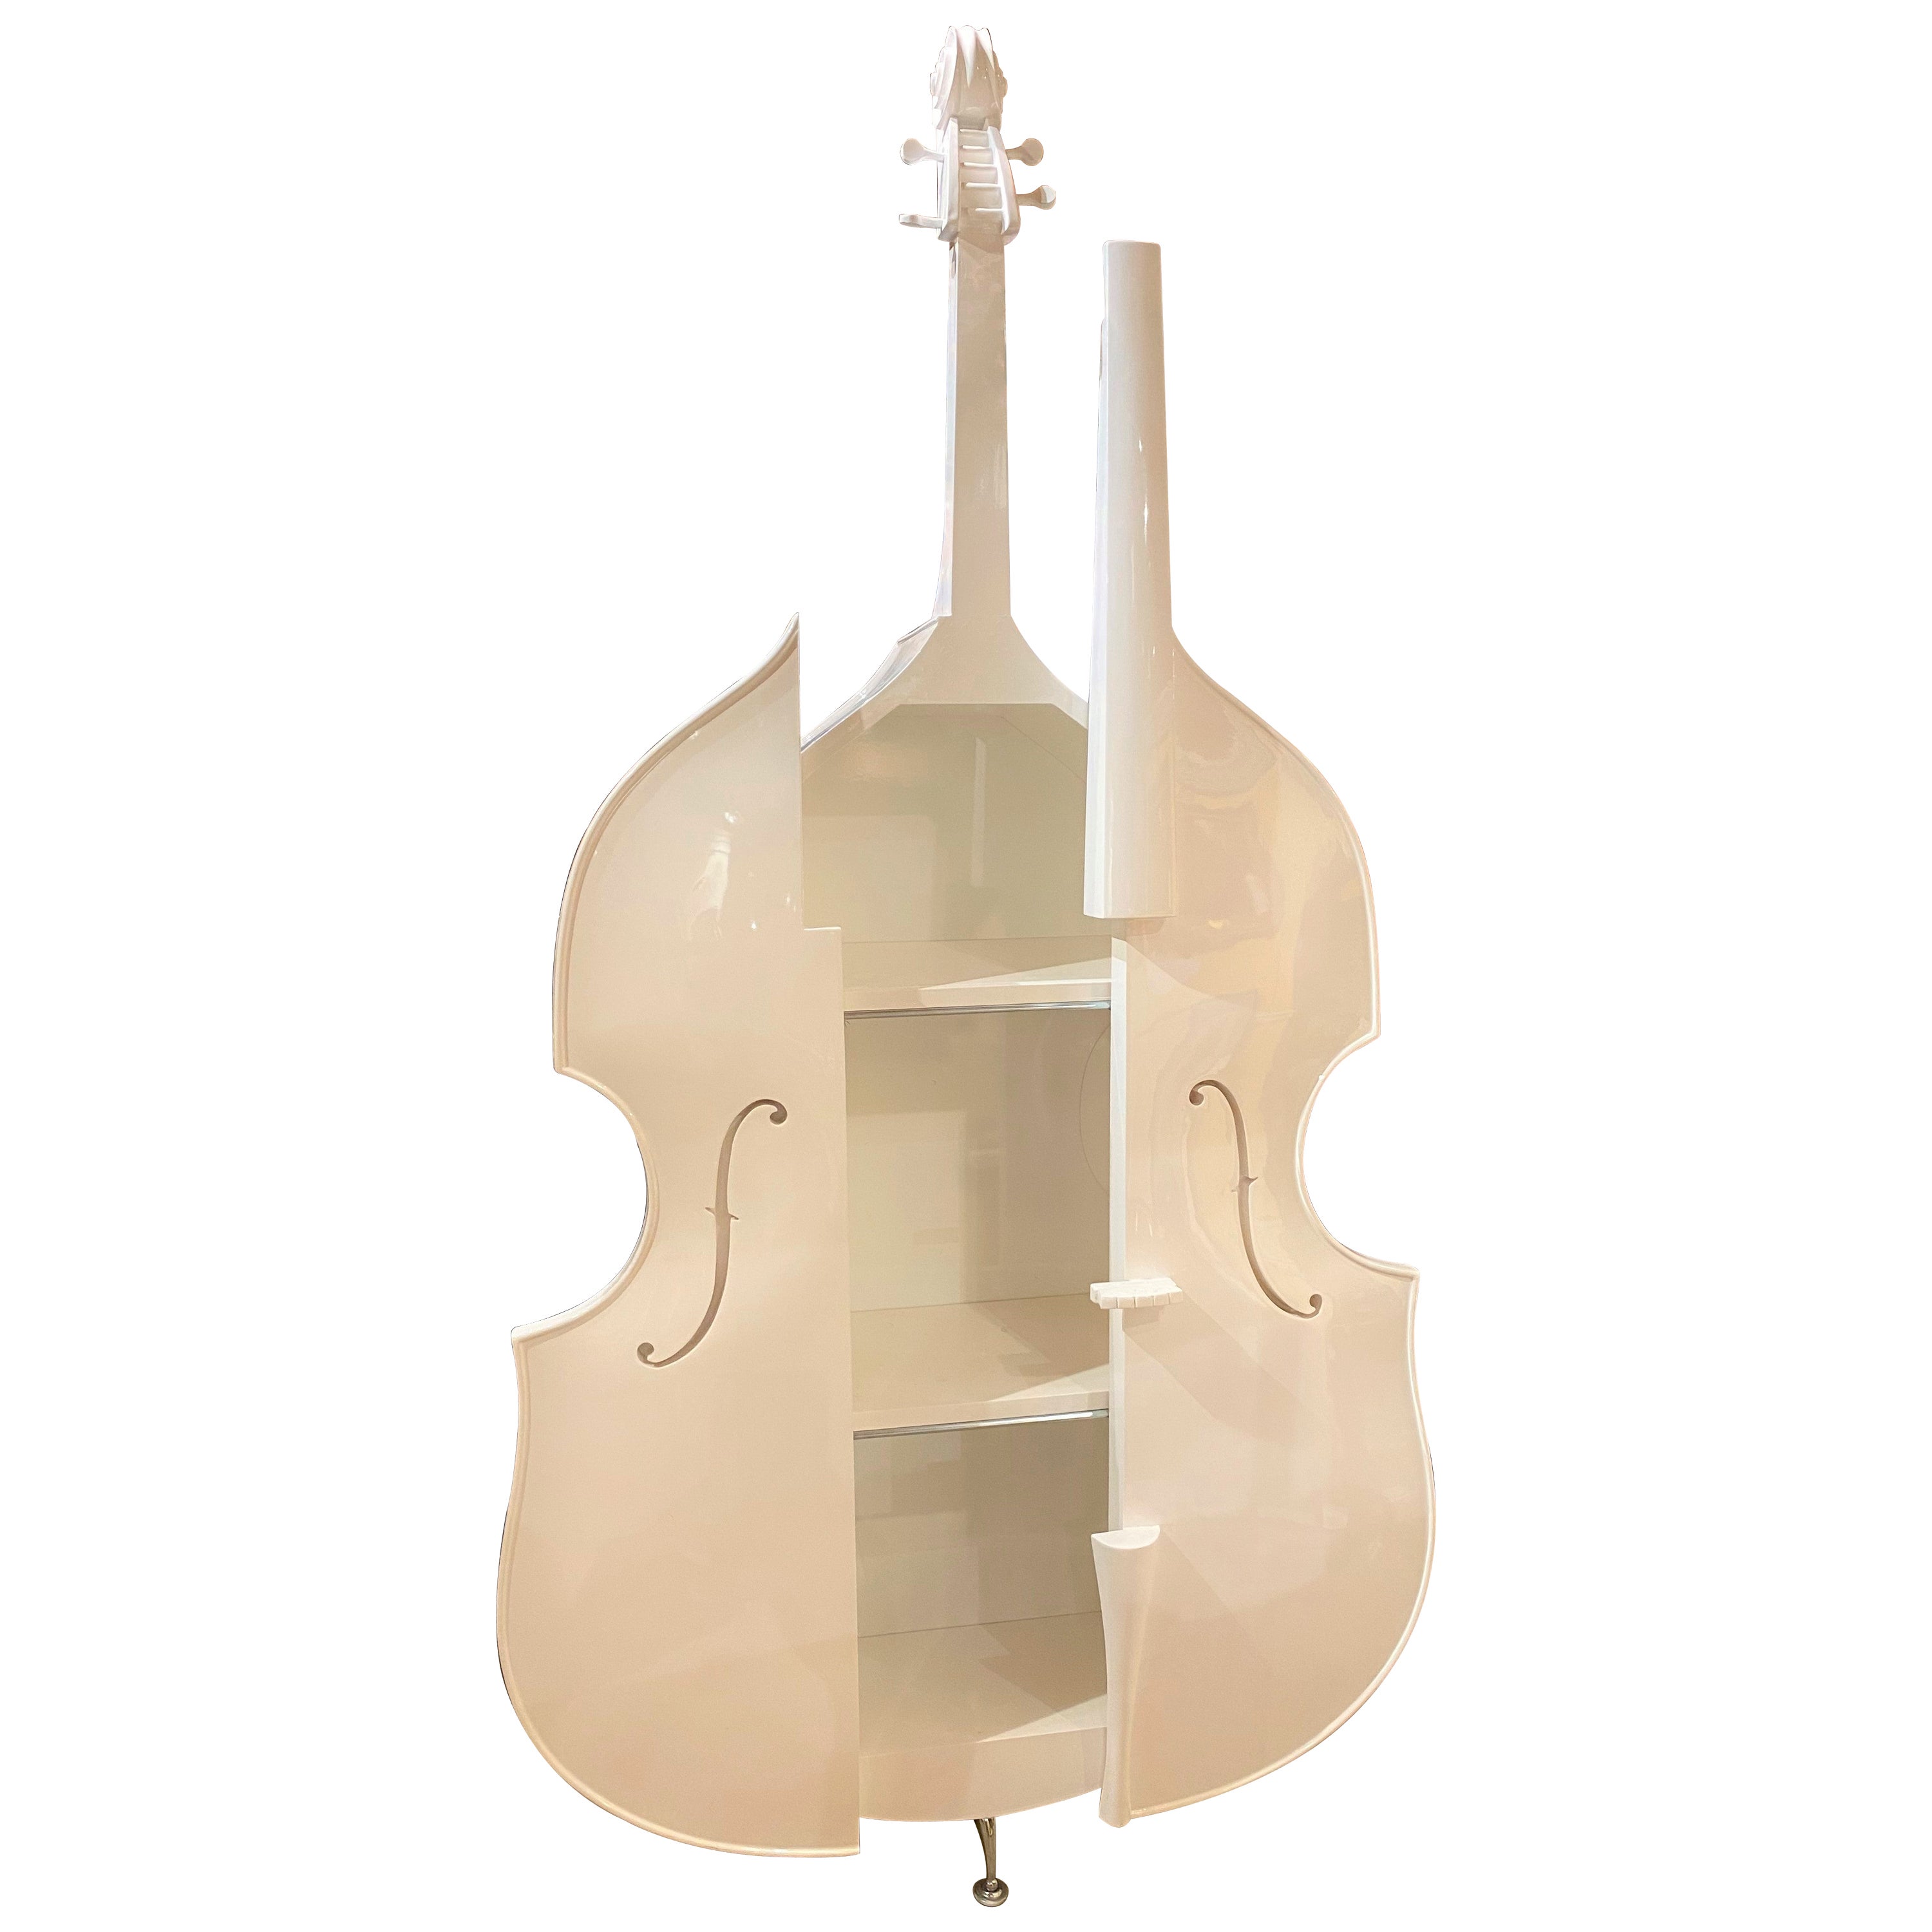 Weiß lackierter moderner doppelreihiger Schrank oder Bücherregal in Cello-Form, weiß lackiert